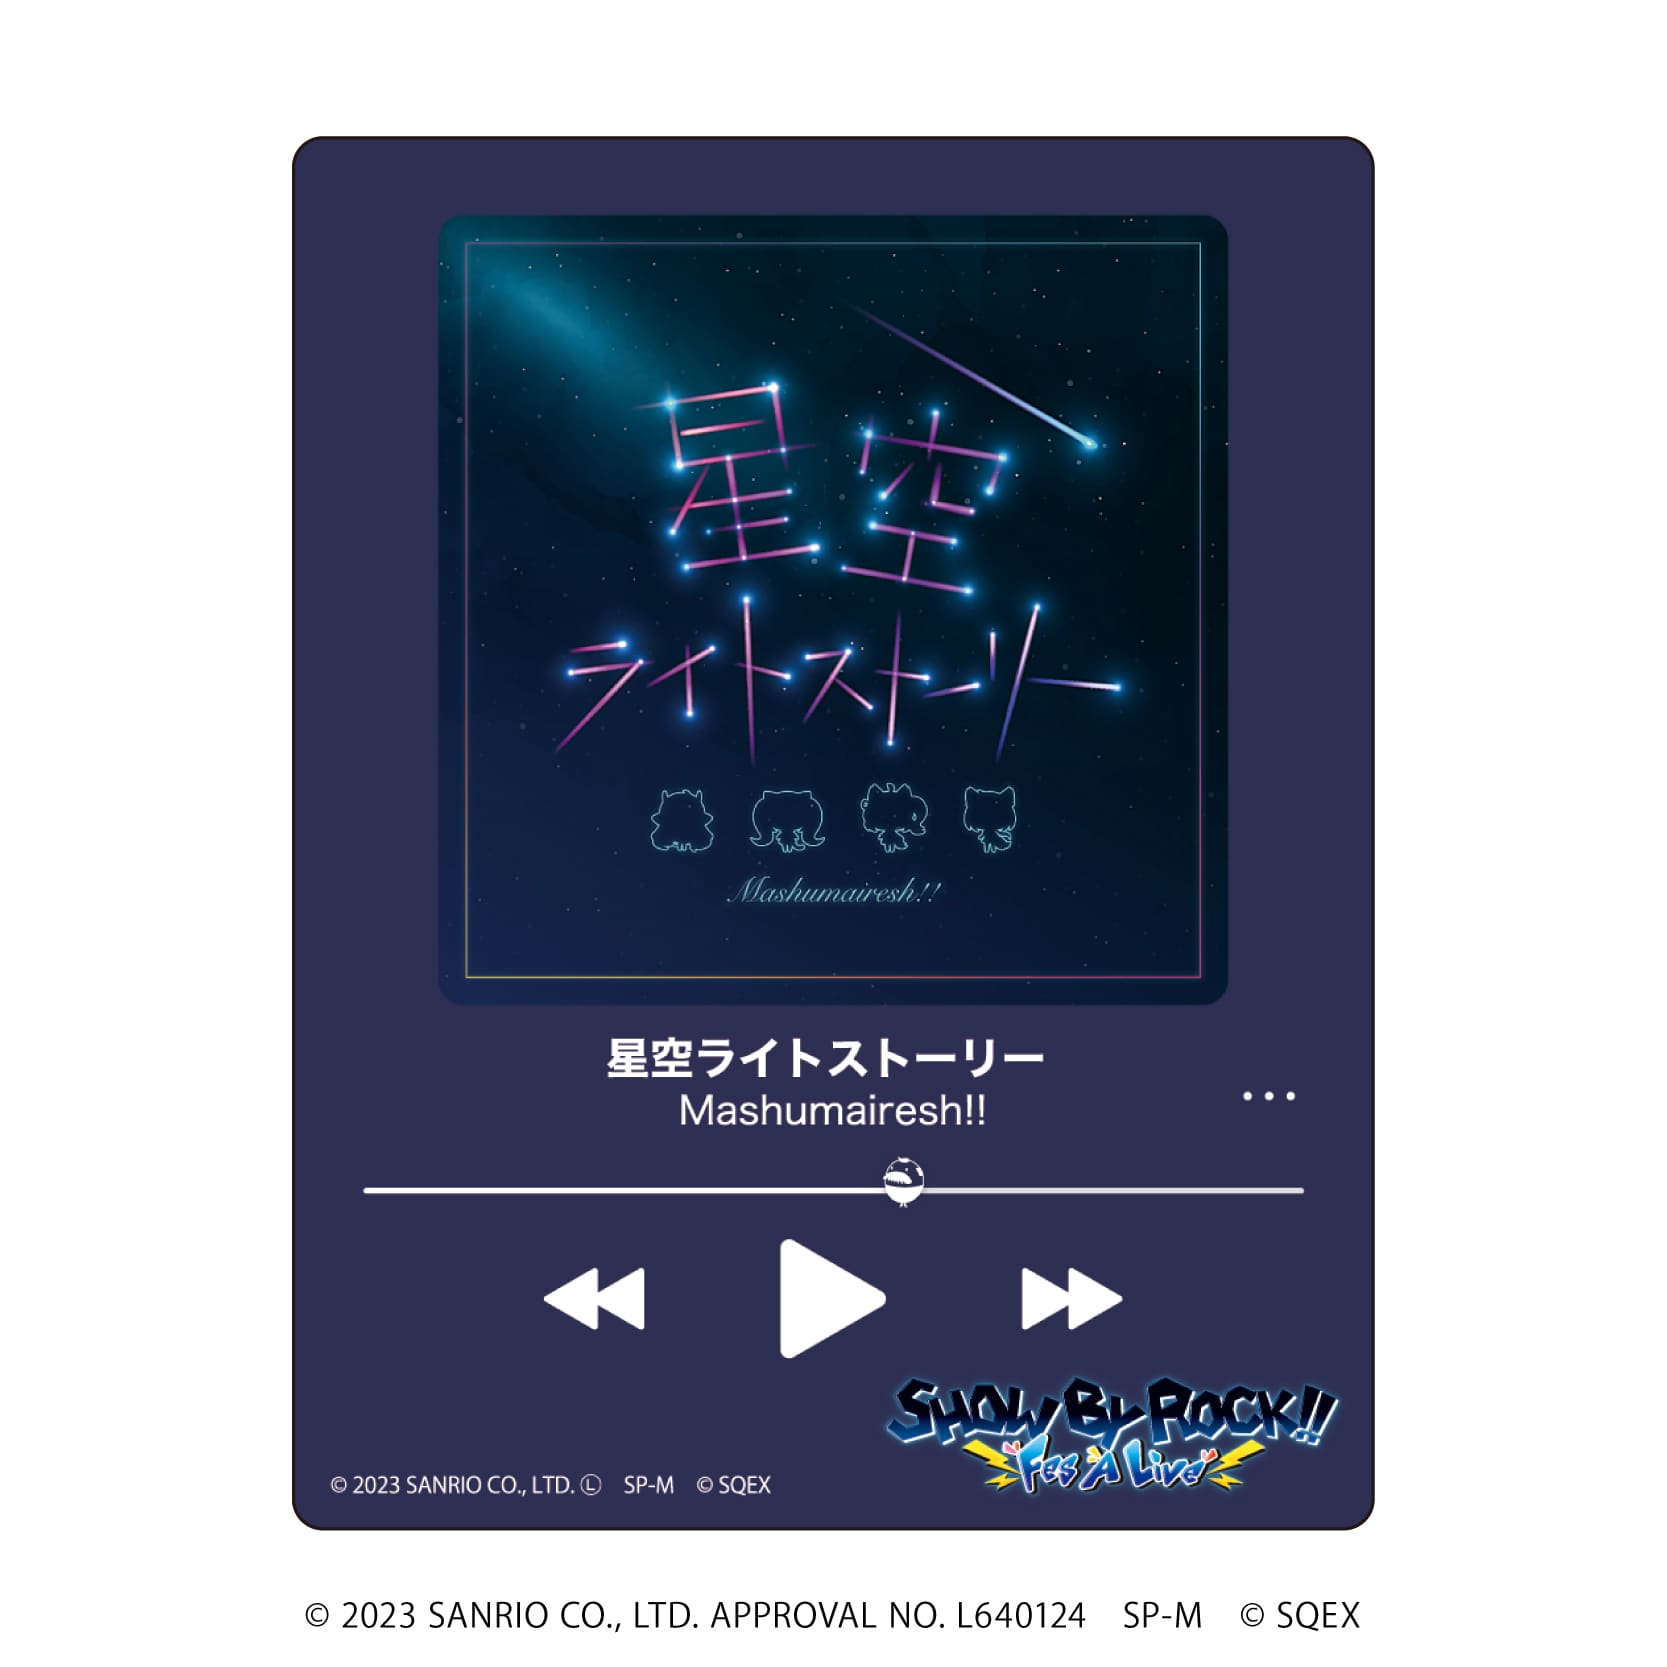 アクリルカード「SHOW BY ROCK!!」33/CDジャケットデザイン コンプリートBOX(全6種)